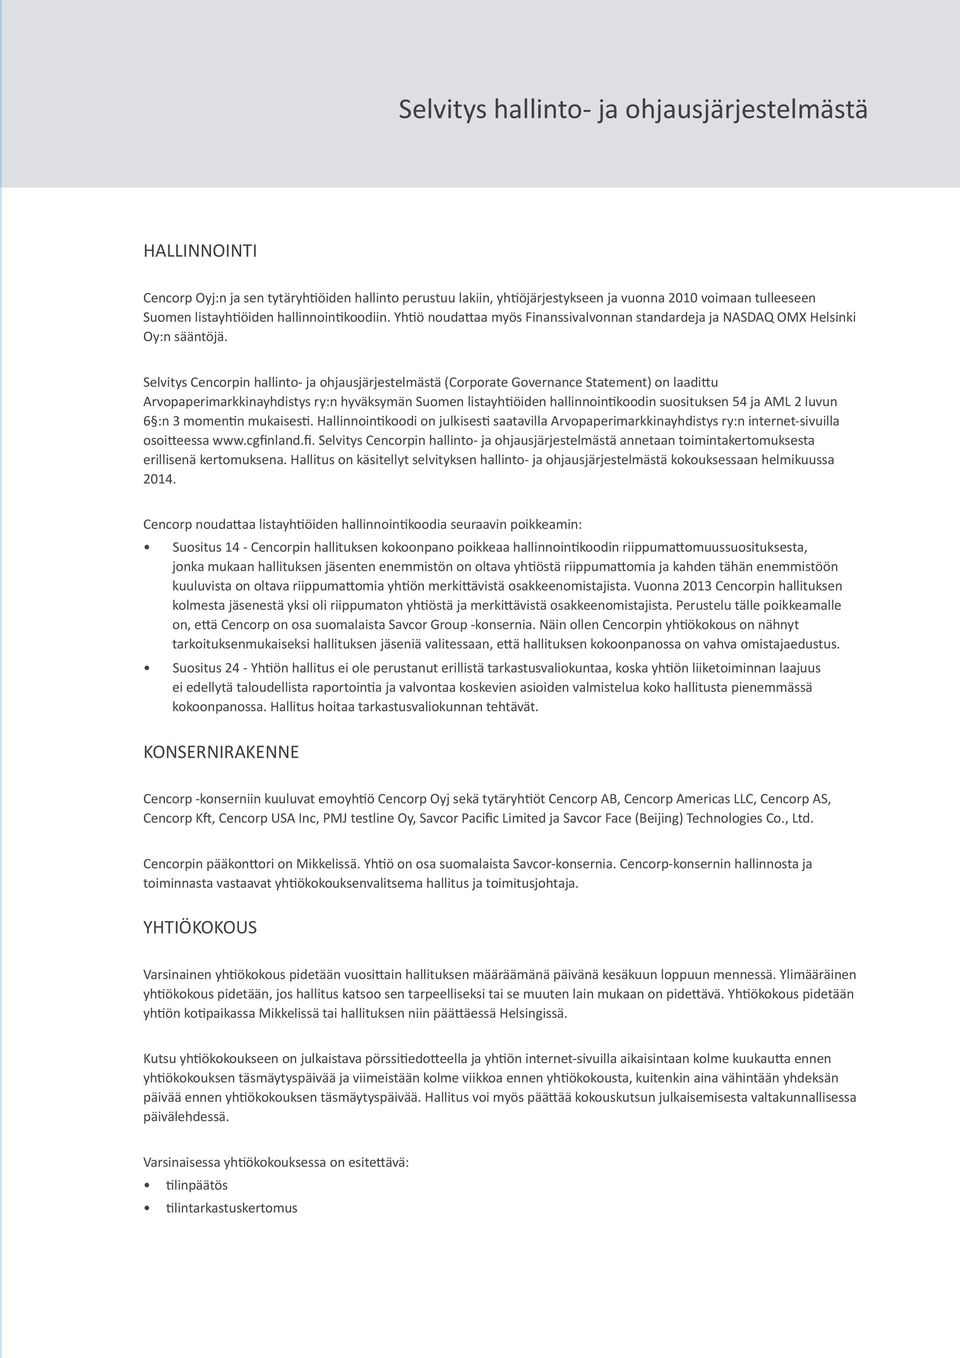 Selvitys Cencorpin hallinto- ja ohjausjärjestelmästä (Corporate Governance Statement) on laadittu Arvopaperimarkkinayhdistys ry:n hyväksymän Suomen listayhtiöiden hallinnointikoodin suosituksen 54 ja